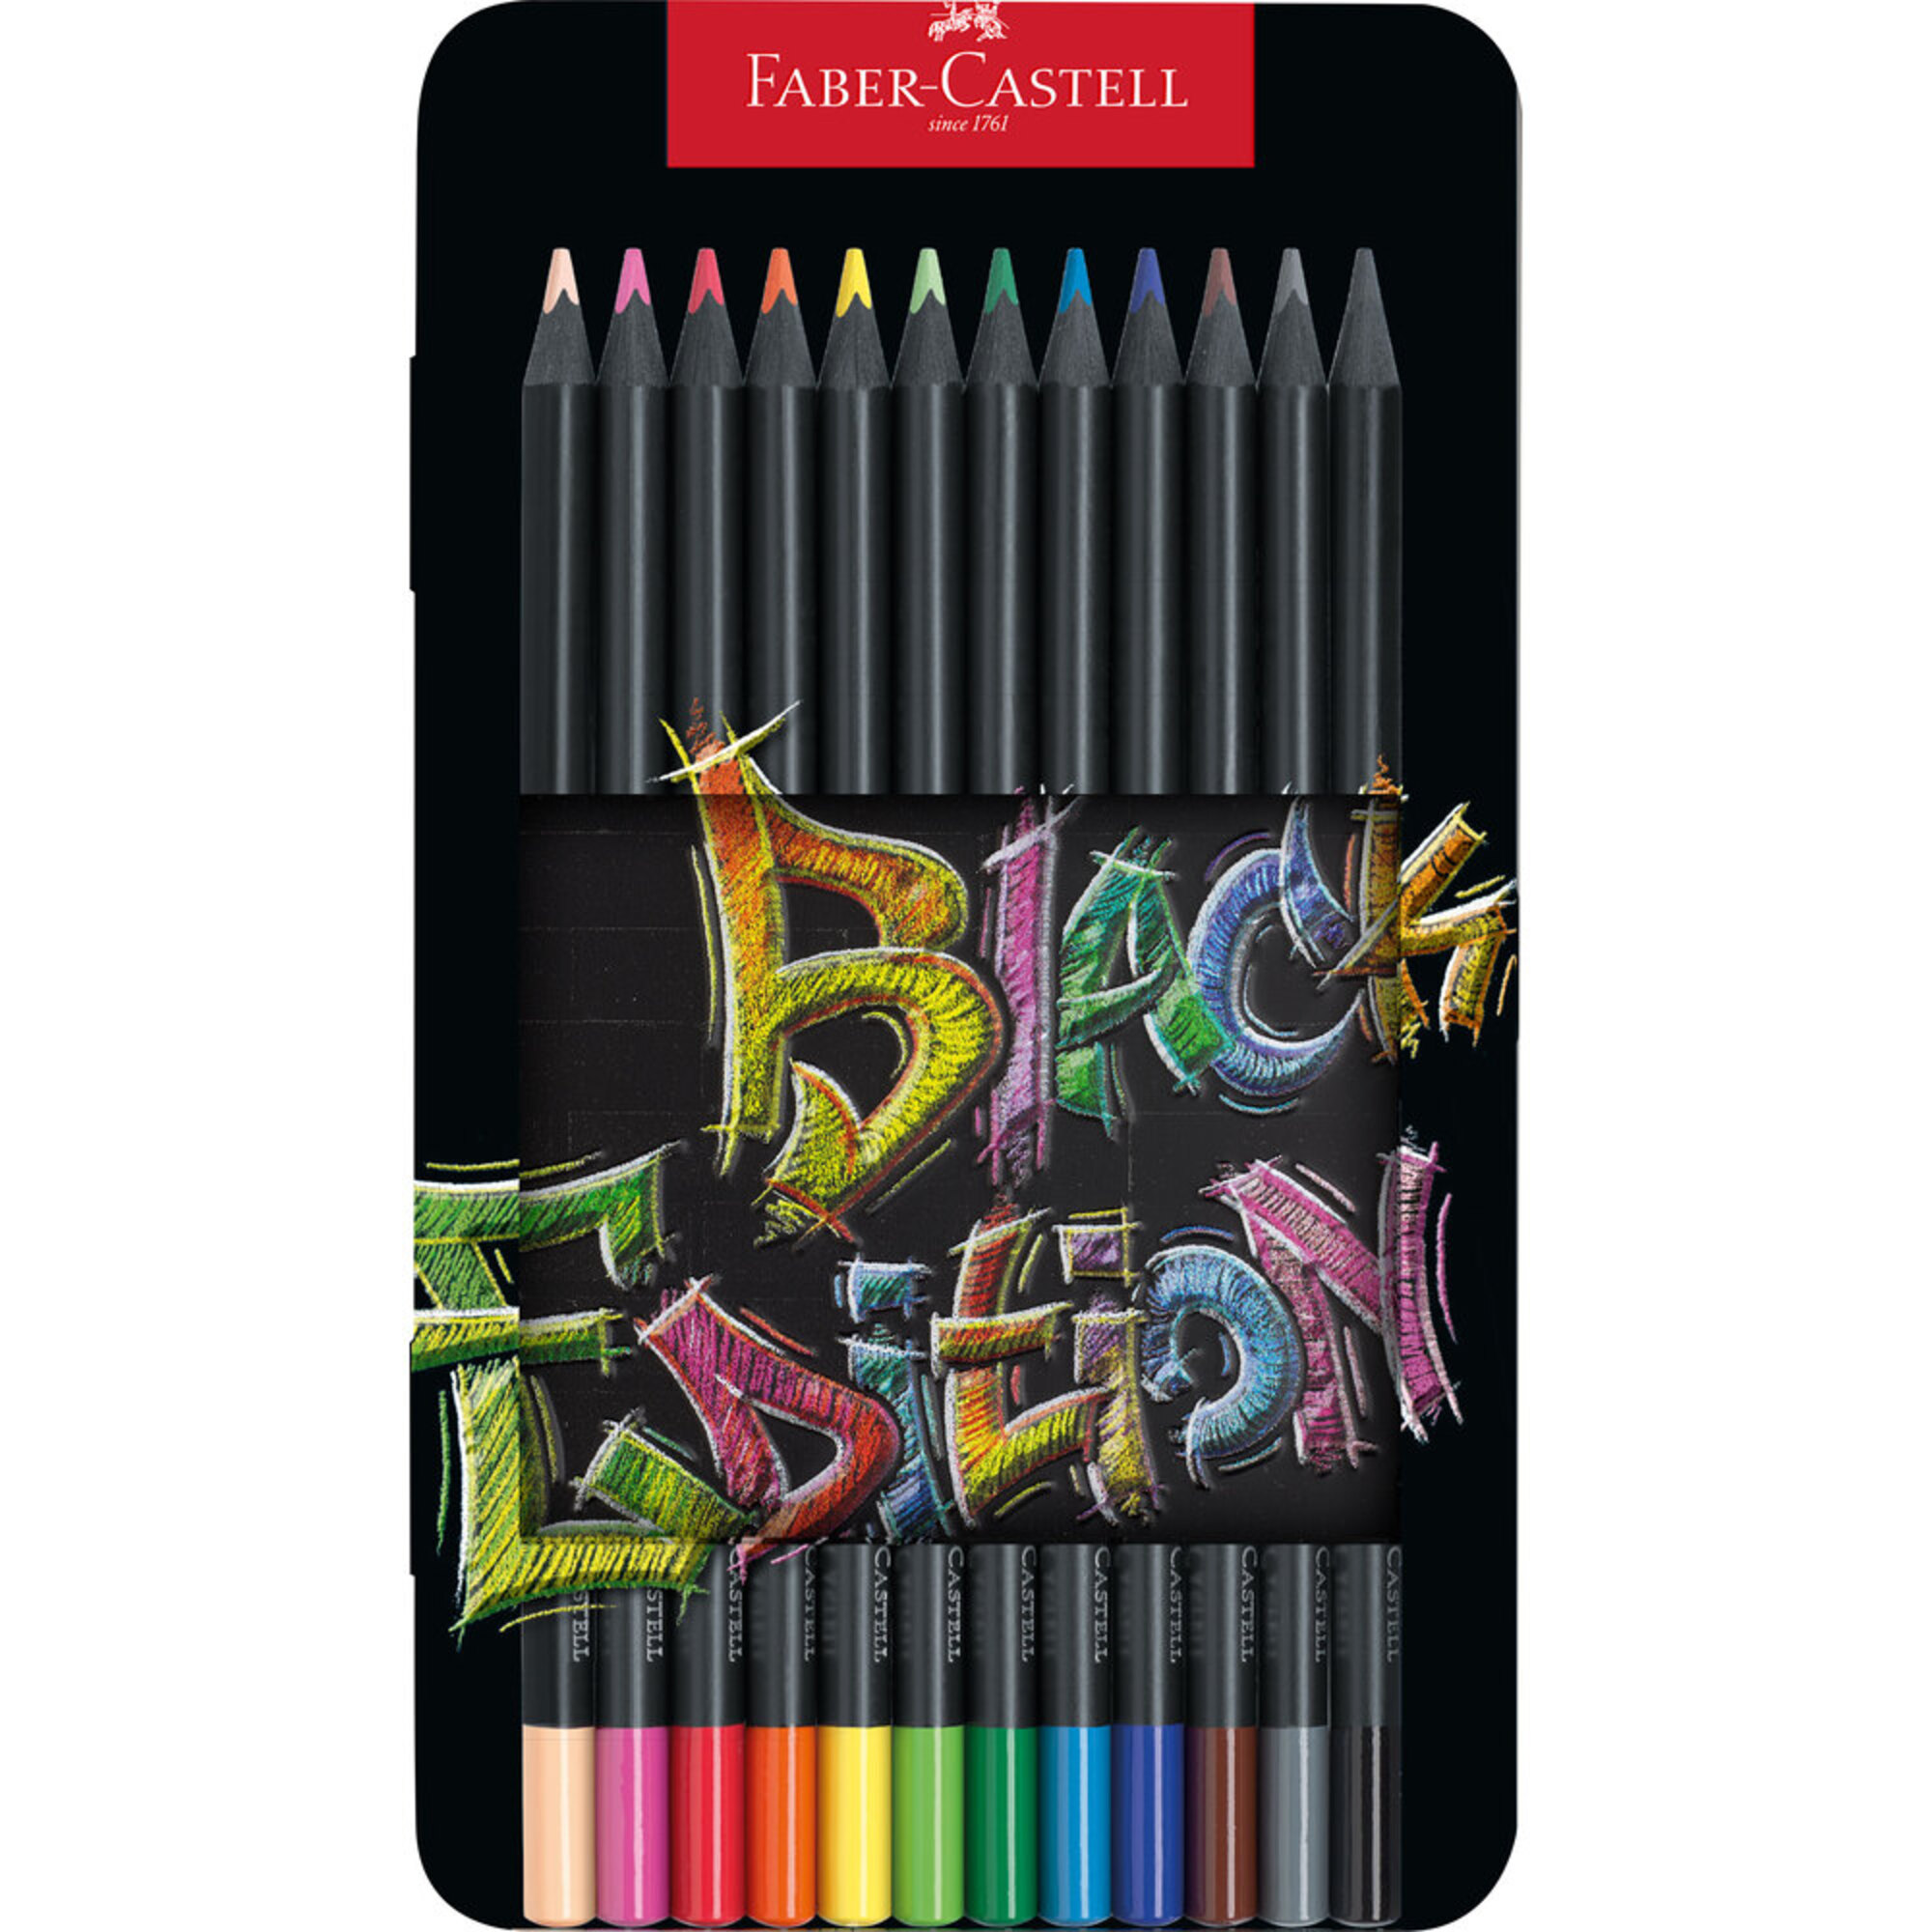 Faber-Castell Black Edition lápis de cor feito de madeira preta profunda  produz efeitos de cores brilhantes.